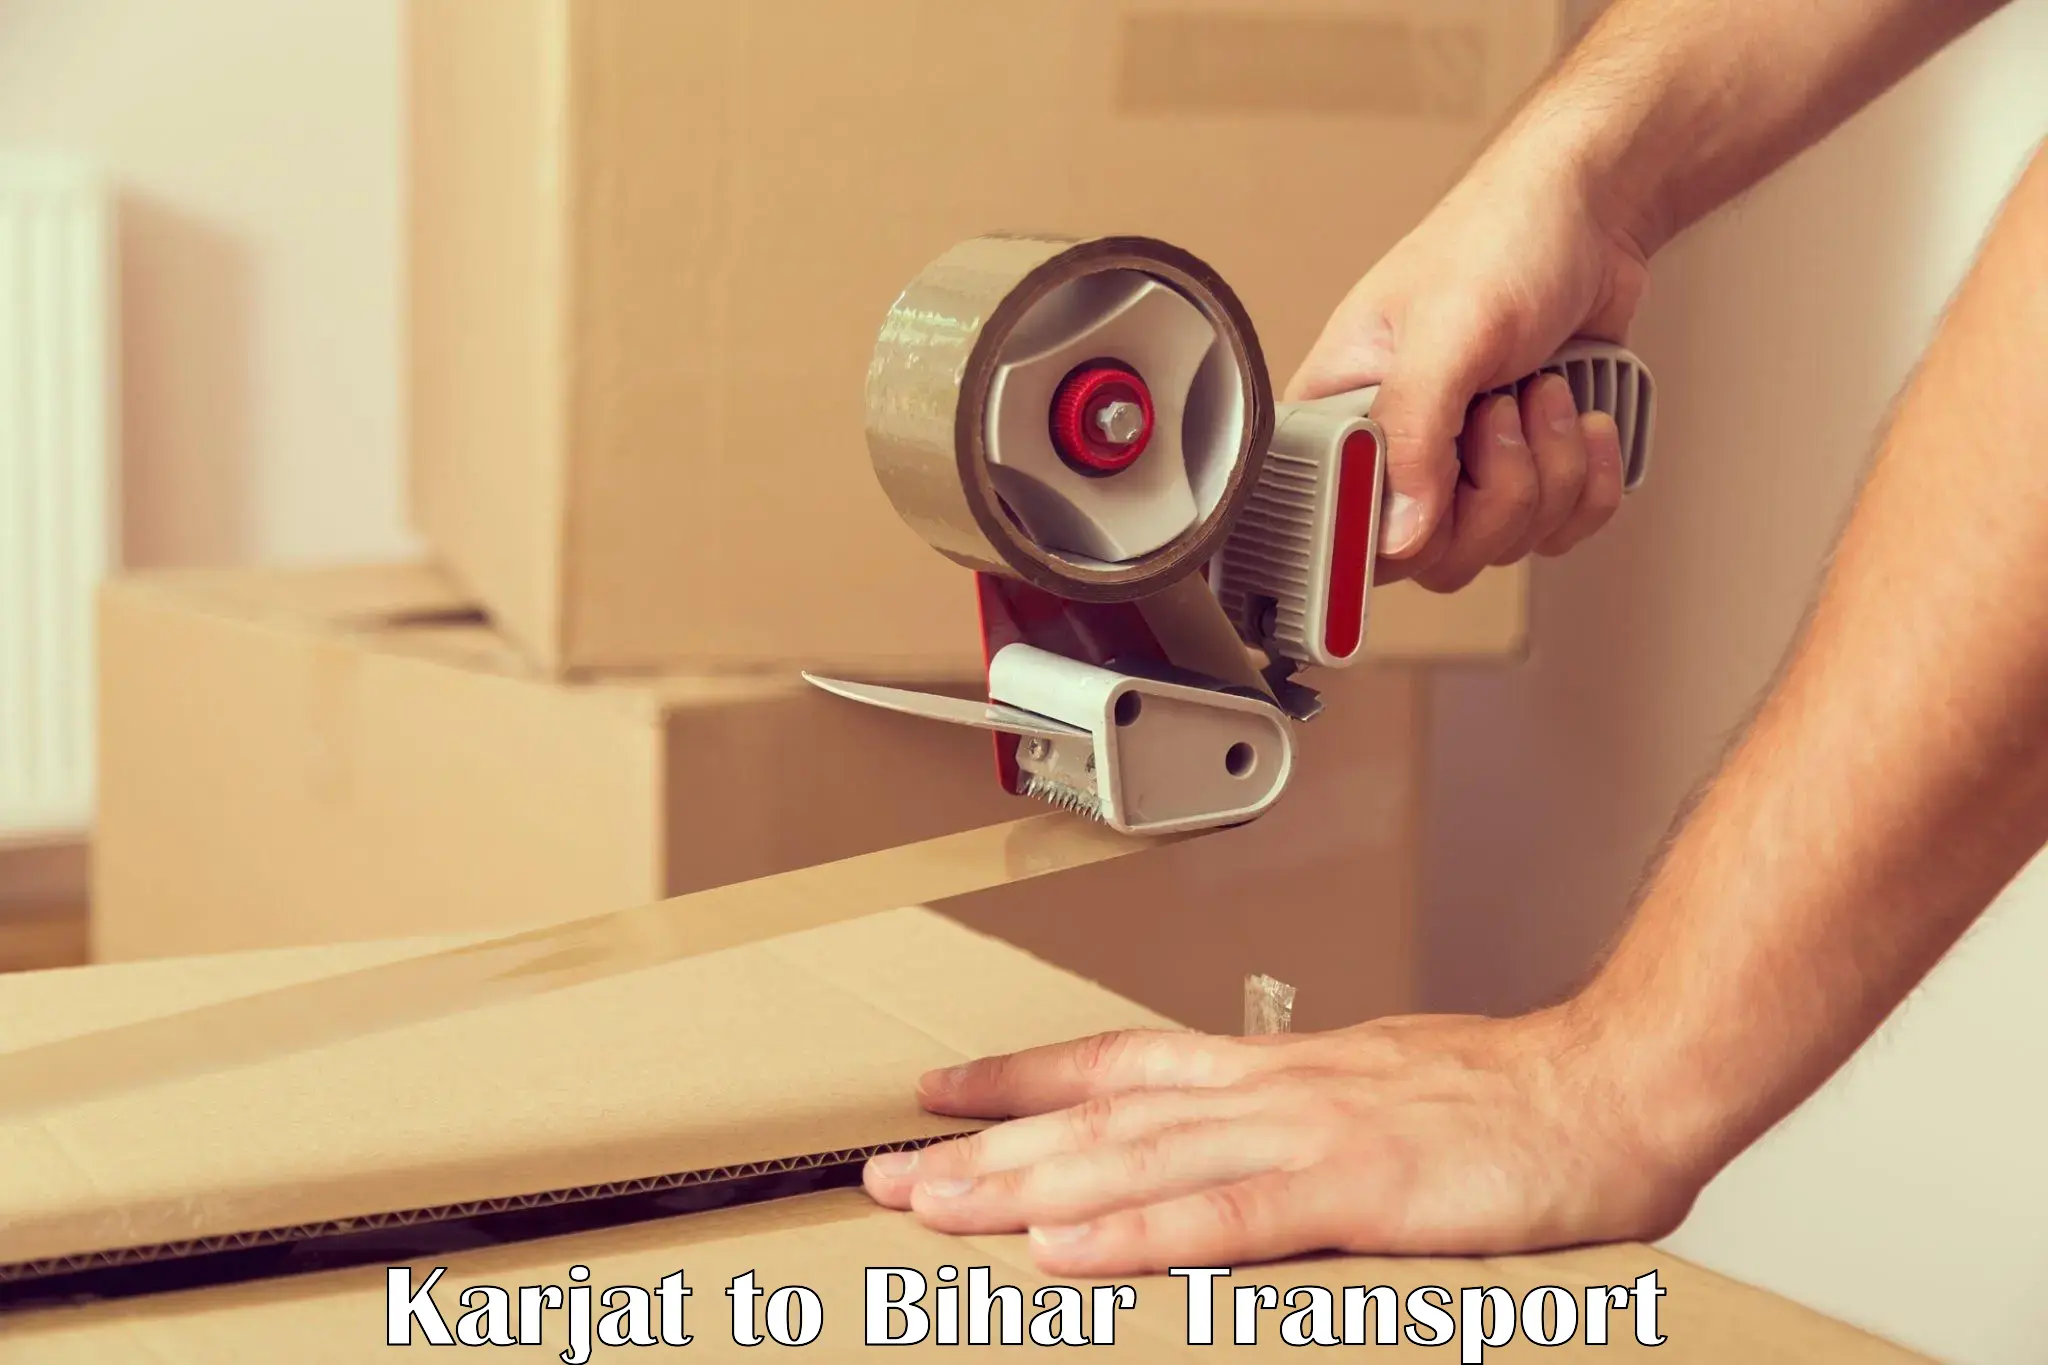 Pick up transport service Karjat to Nalanda